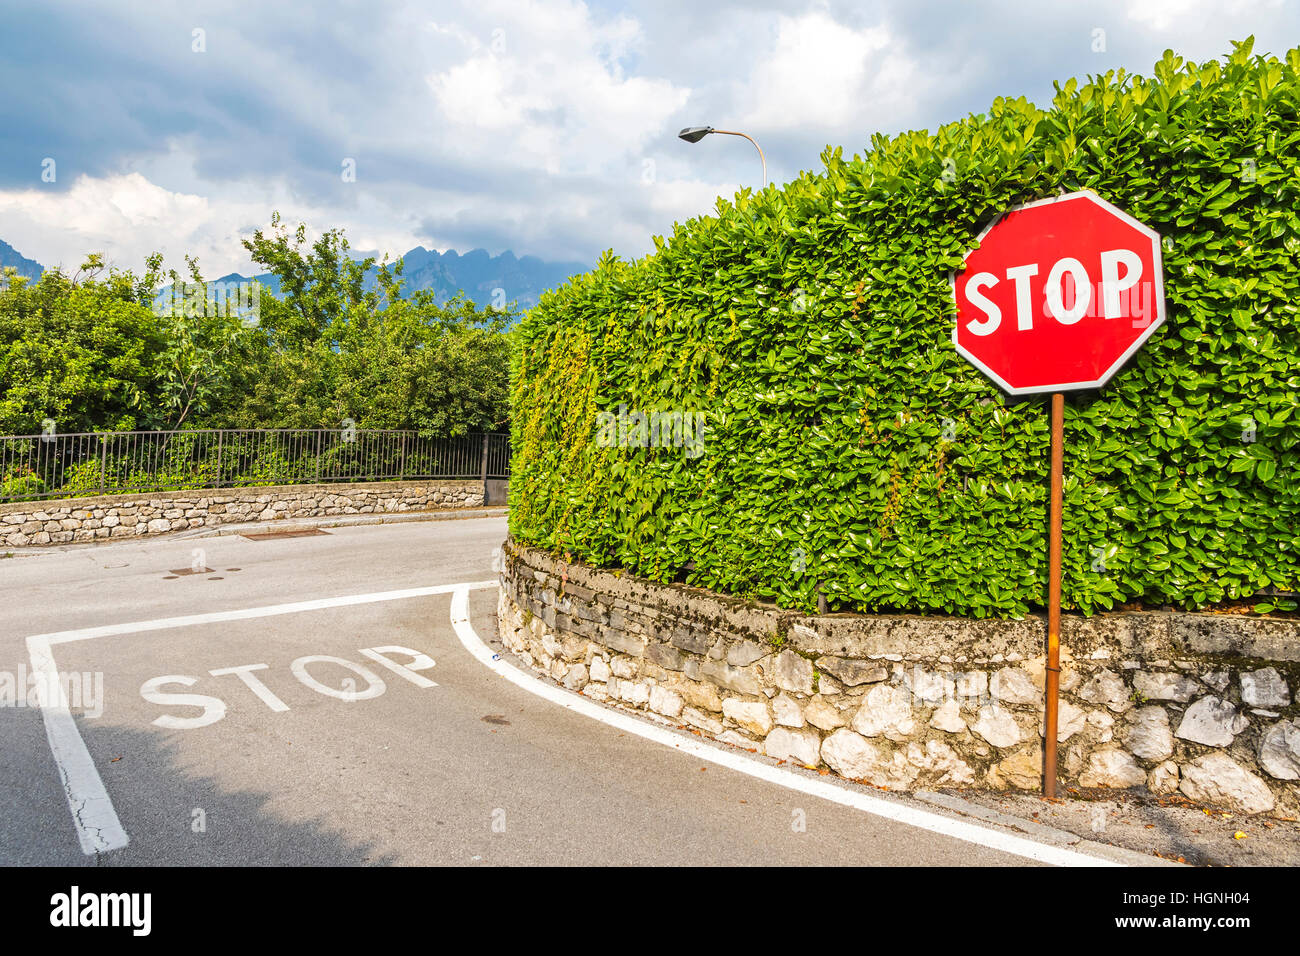 Cruce con símbolo de stop pintado sobre el asfalto y hexagonal rojo señal de pare en poste de metal. Junto a los caminos rurales de la ciudad de Como, Italia Foto de stock